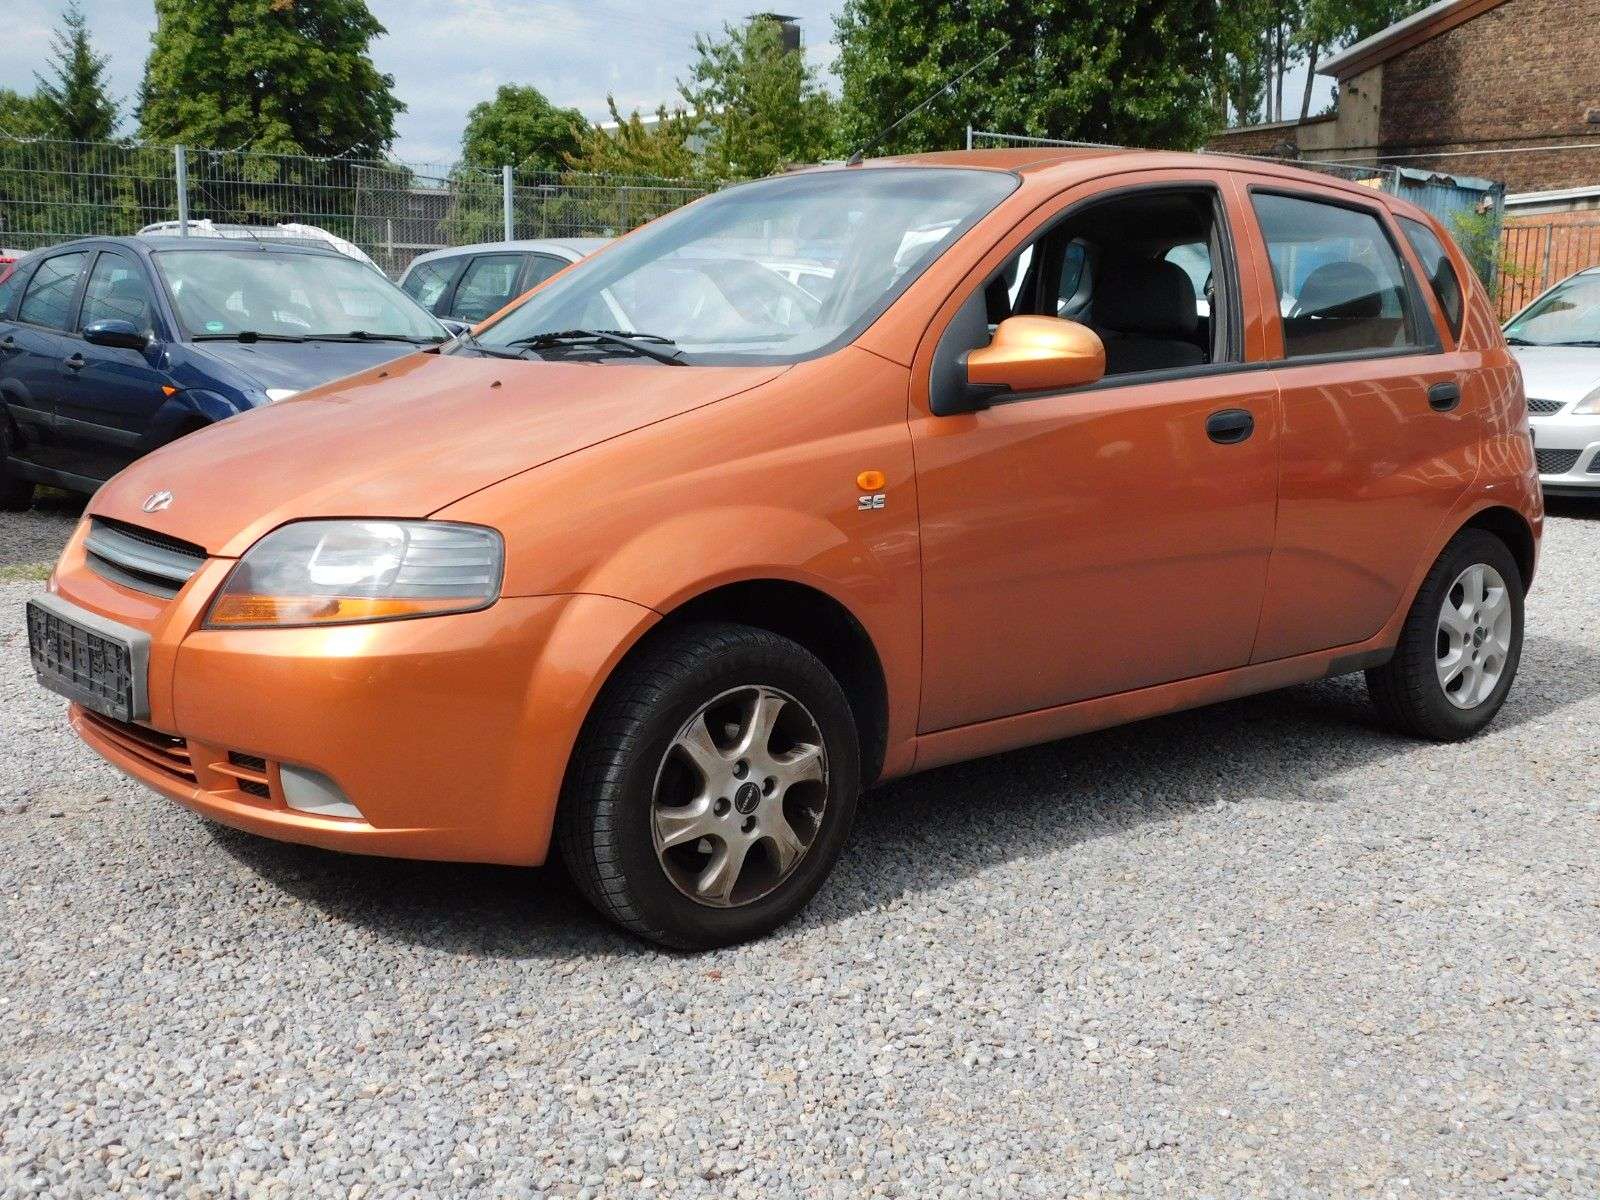 Daewoo Kalos Sedan in Orange used in Mülheim an der Ruhr for € 799.-